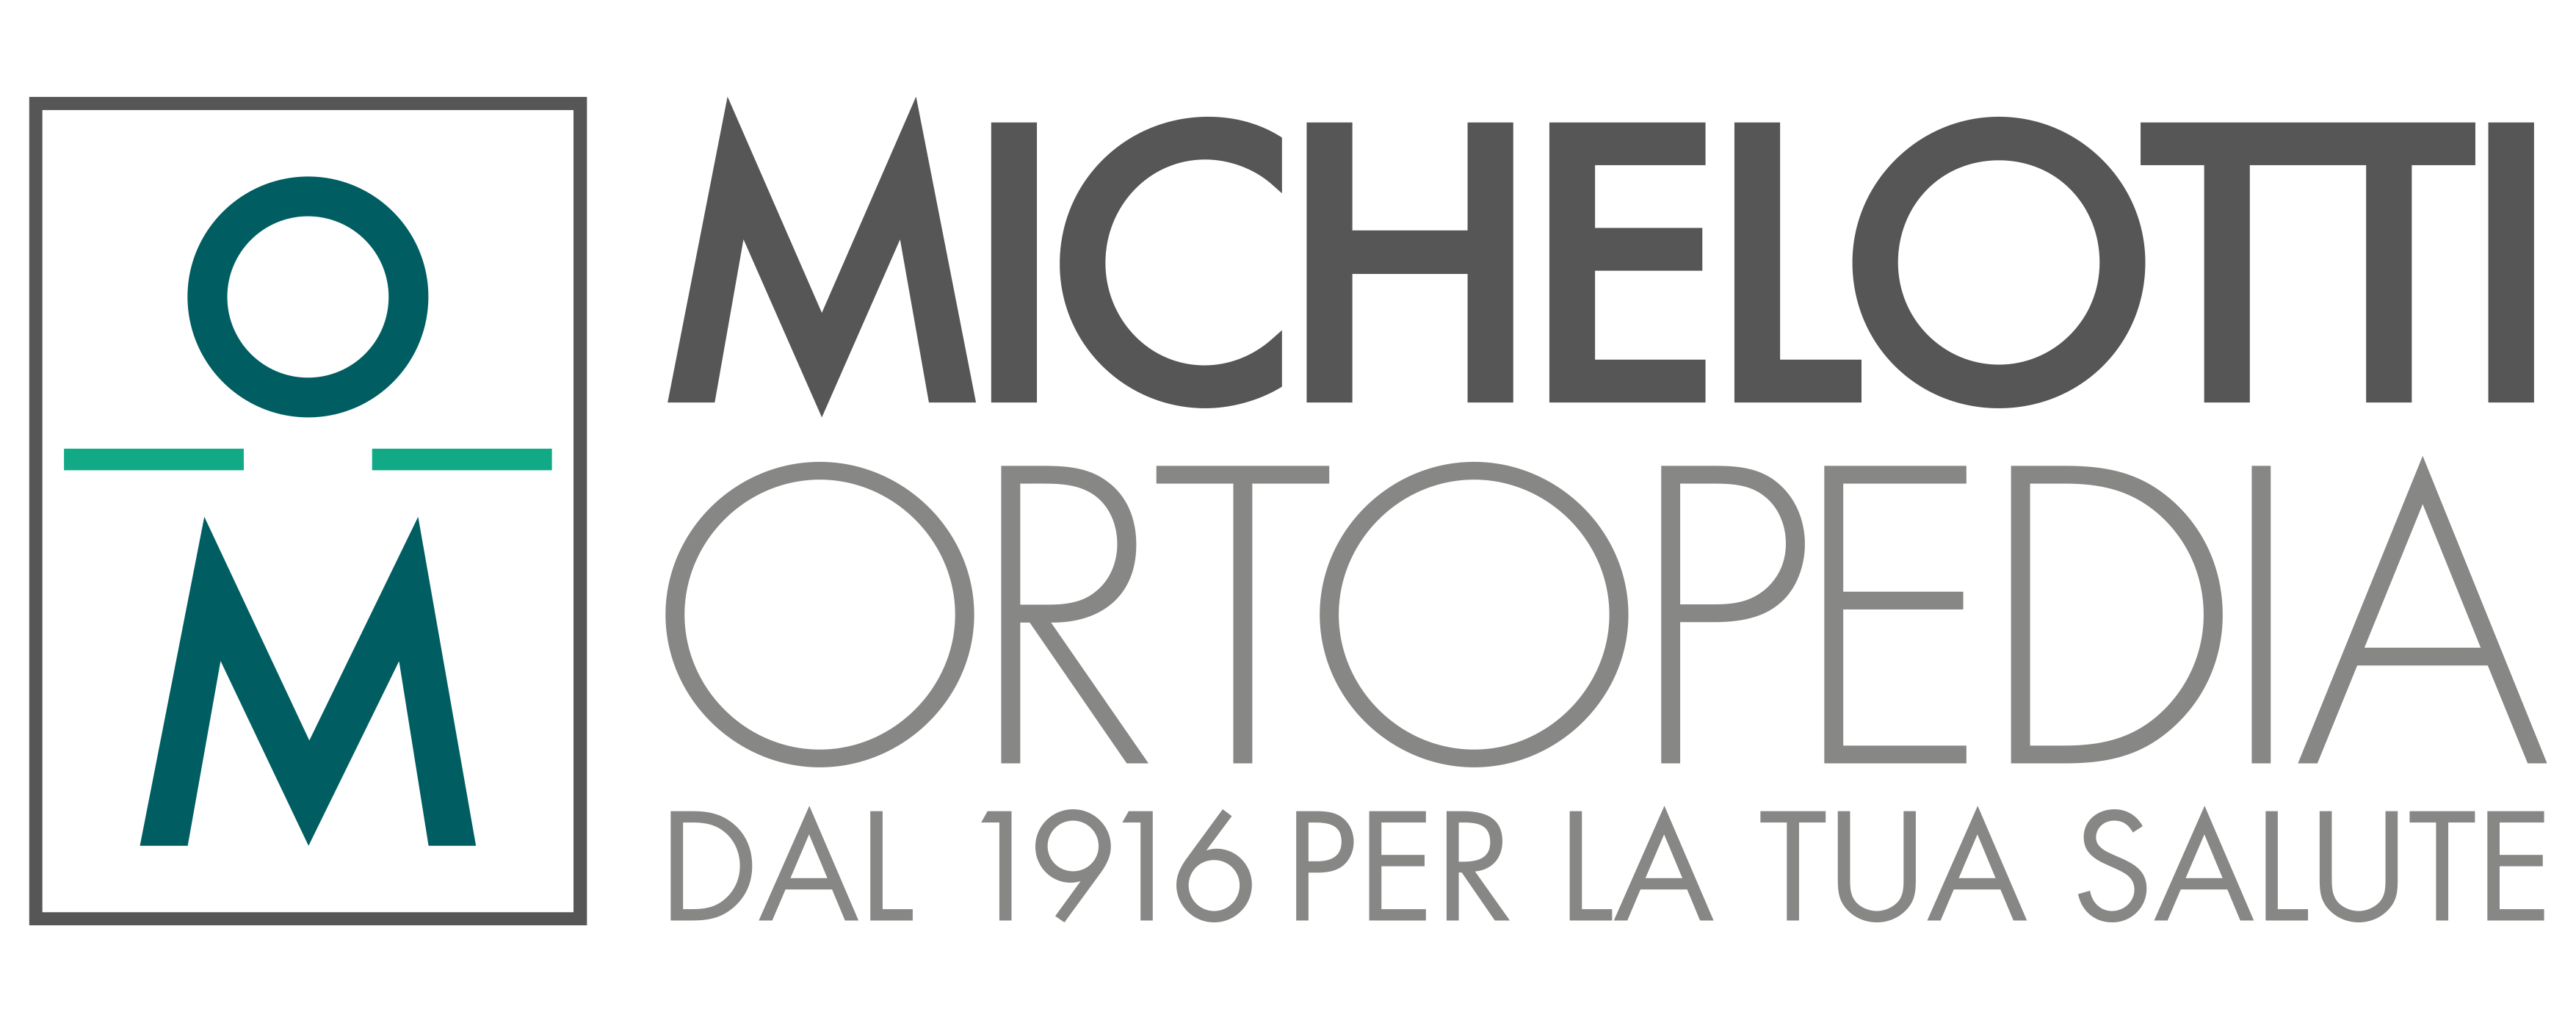 Michelotti